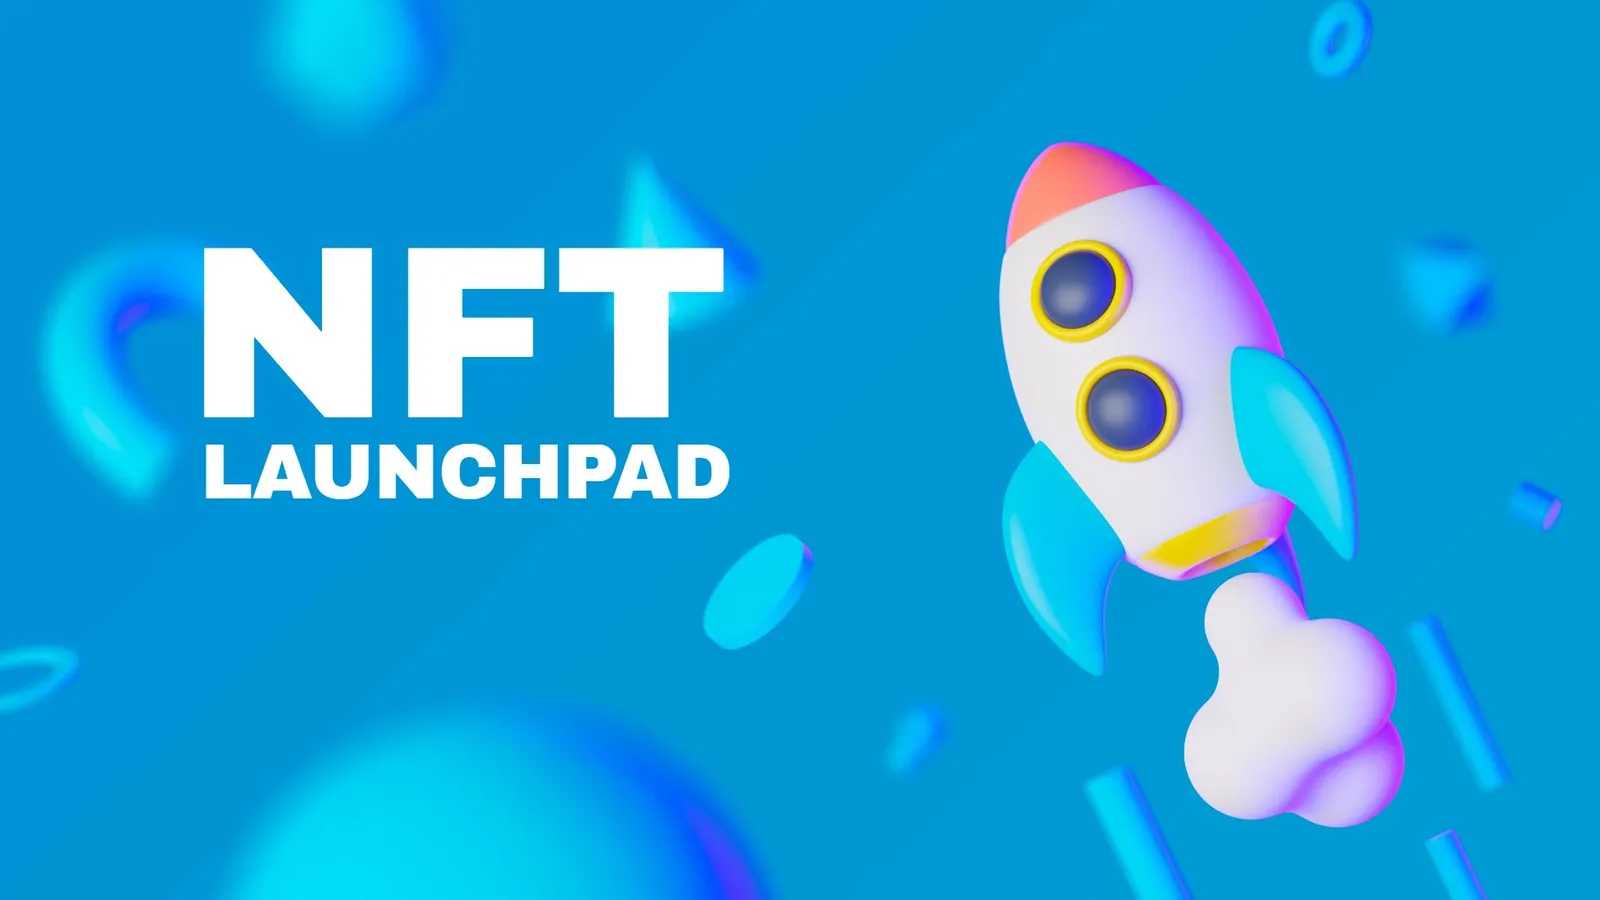 NFT Launchpad Development Company